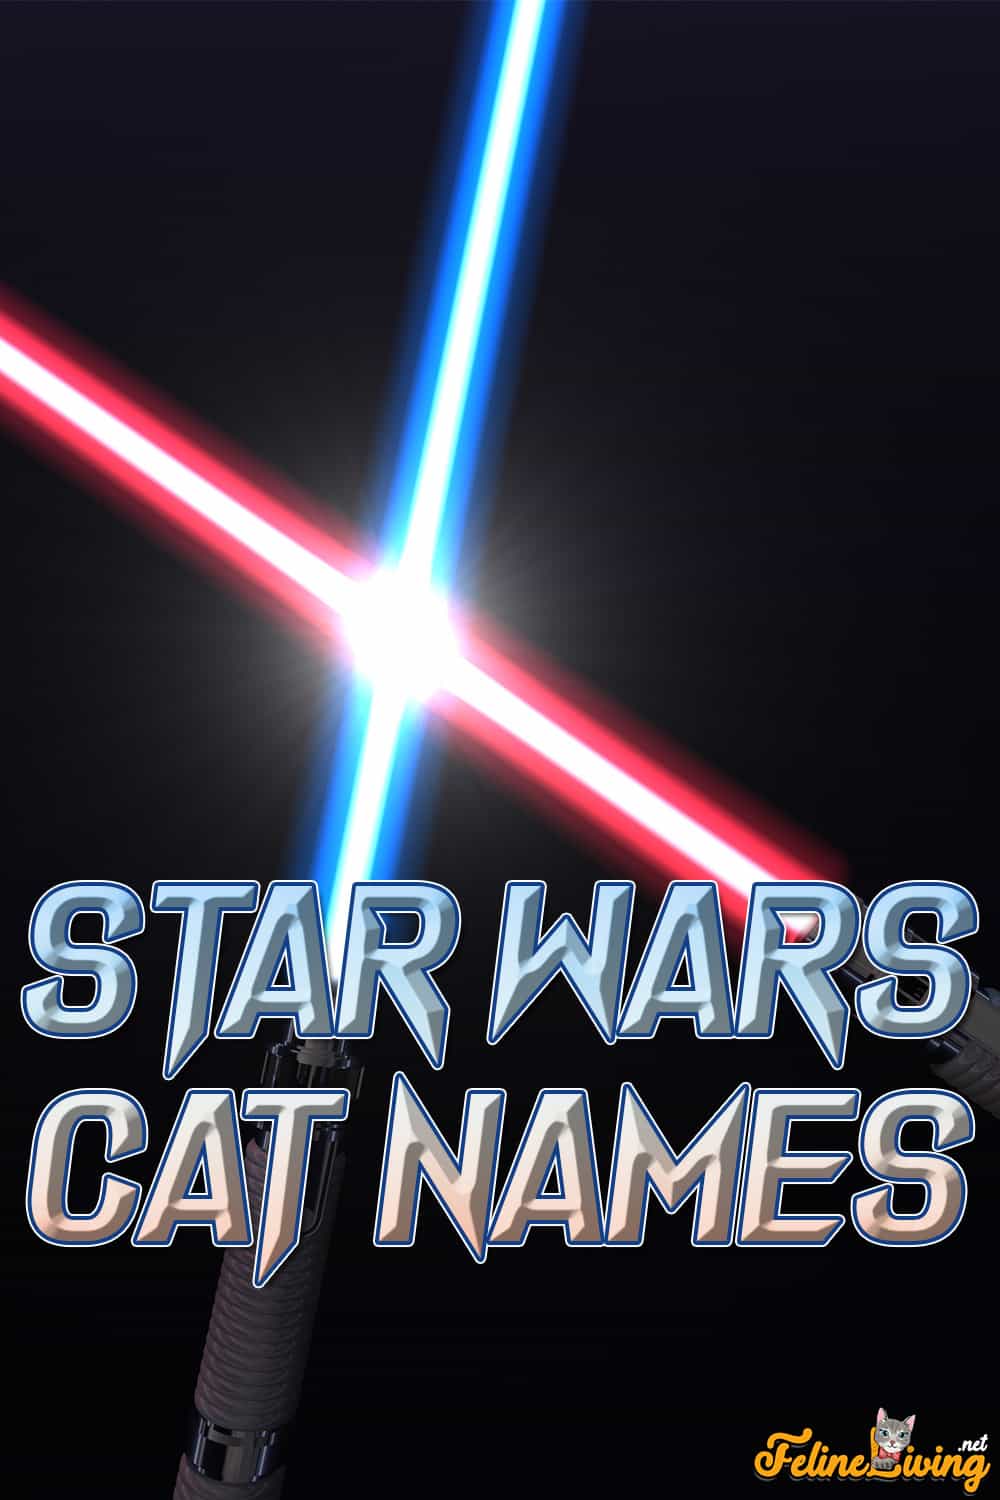 Star Wars-kattennamen: 50 beste namen geïnspireerd door een sterrenstelsel ver, ver weg